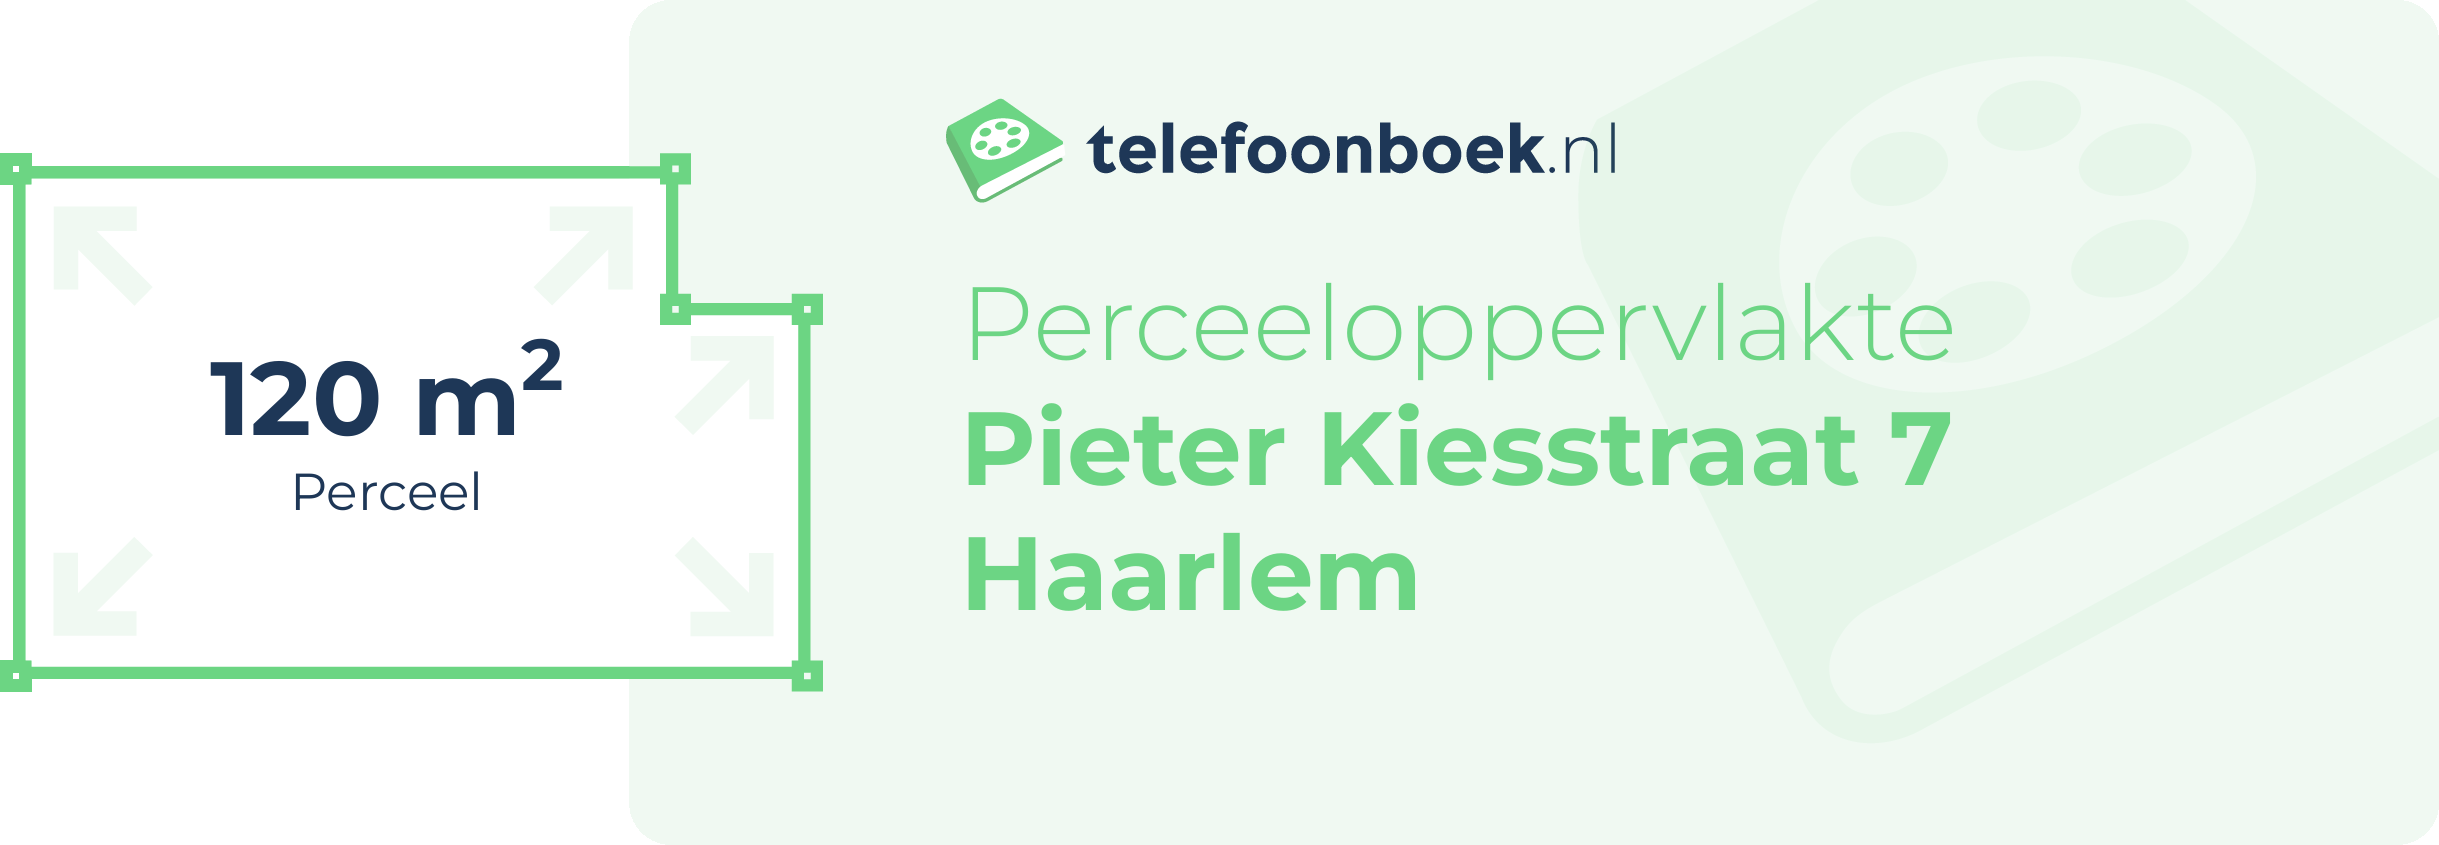 Perceeloppervlakte Pieter Kiesstraat 7 Haarlem